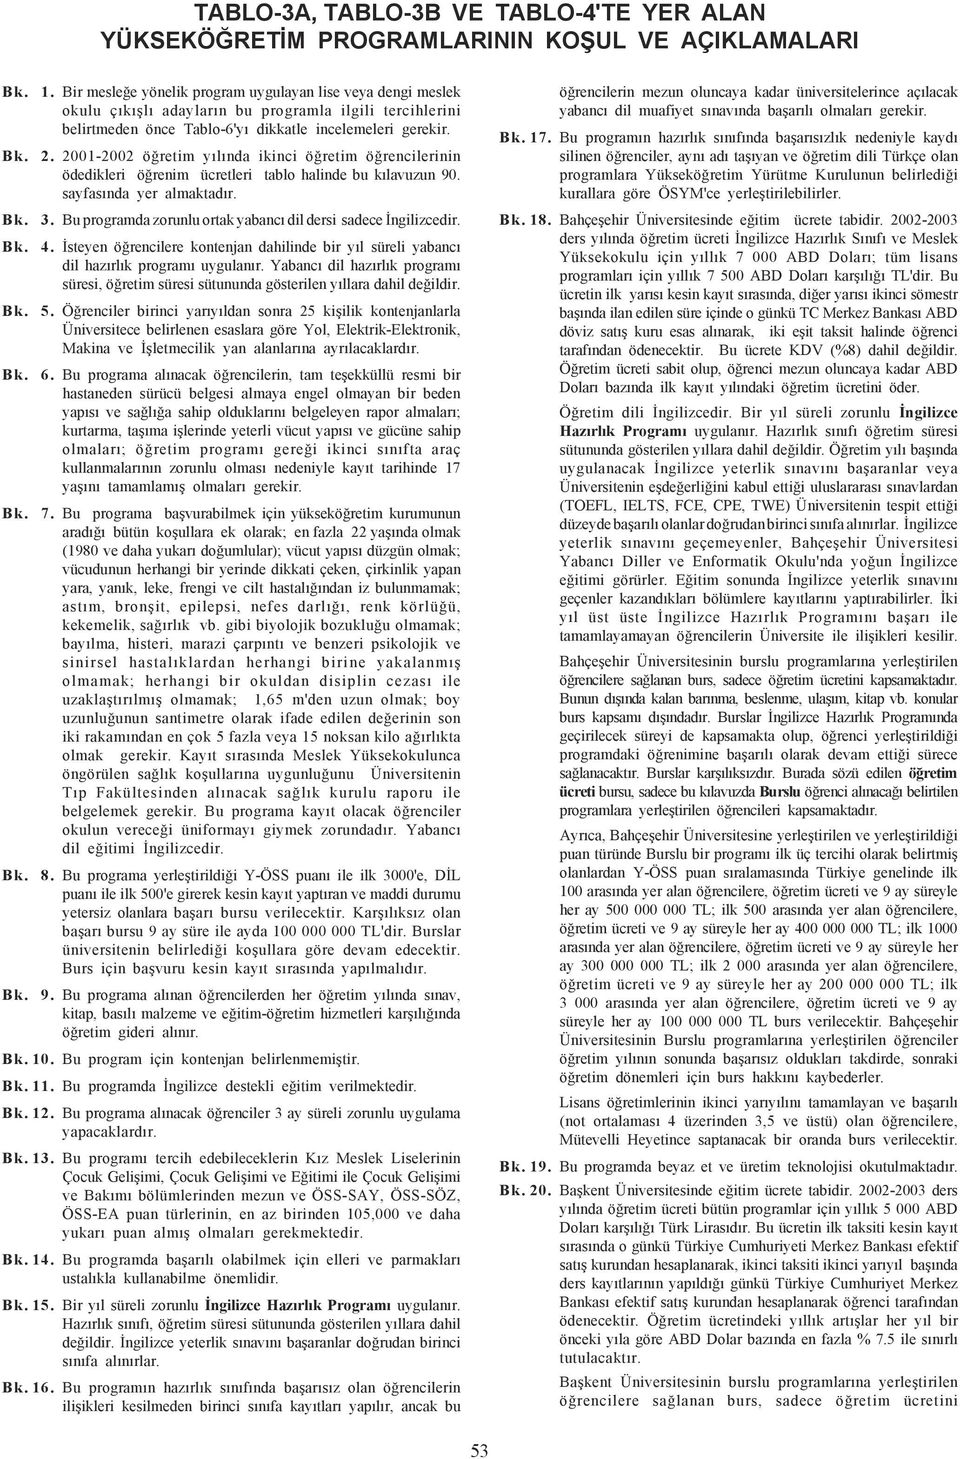 2001-2002 öðretim yýlýnda ikinci öðretim öðrencilerinin ödedikleri öðrenim ücretleri tablo halinde bu kýlavuzun 90. sayfasýnda yer almaktadýr. Bk. 3.